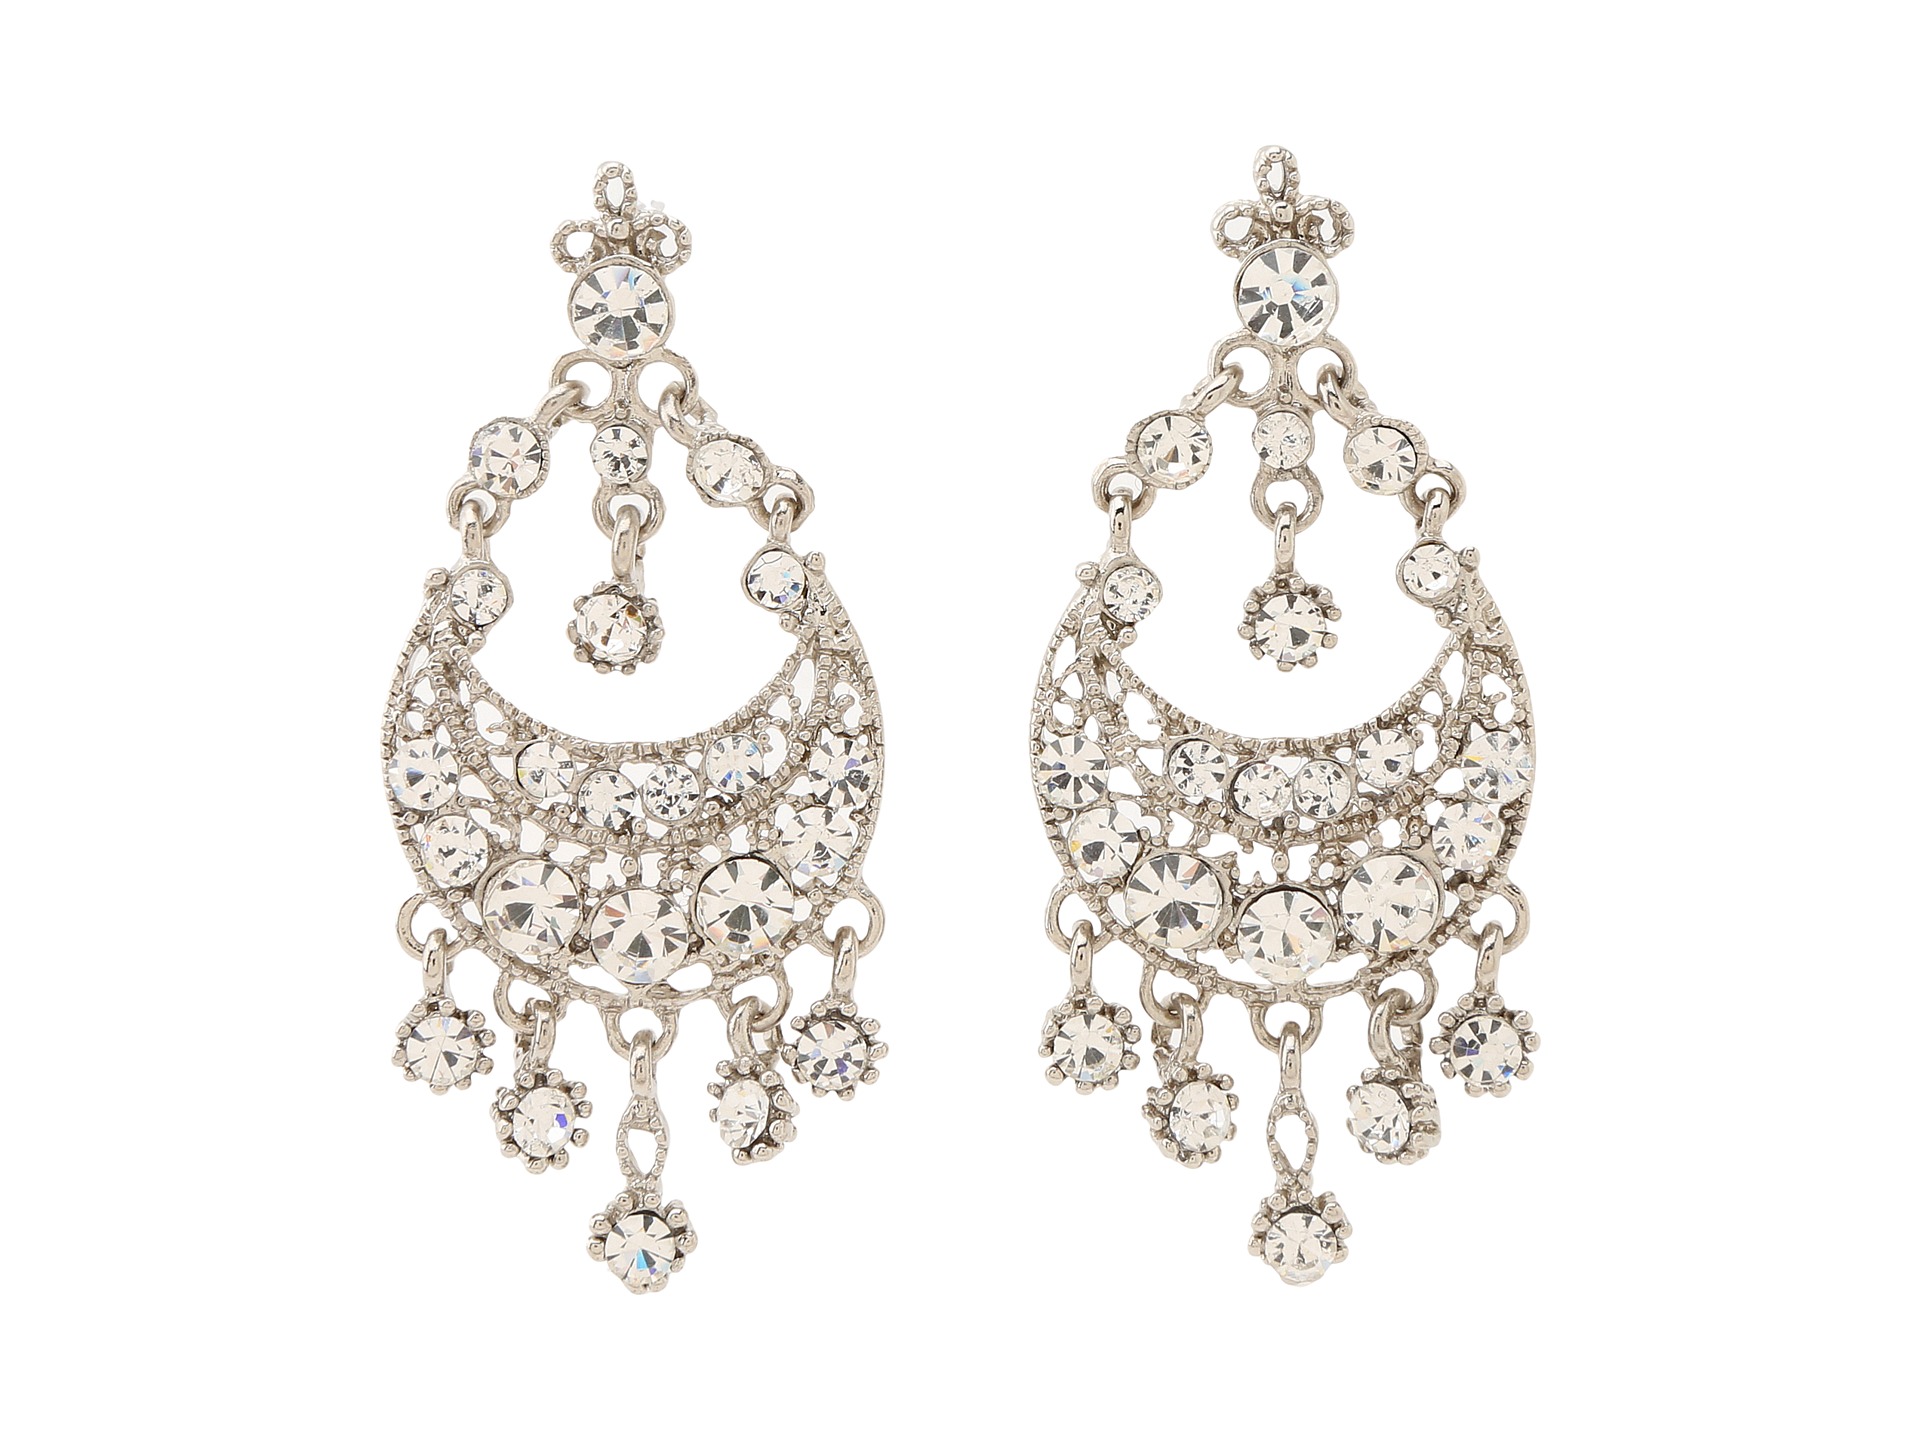 Gypsy Soule Rhinestone Chandelier Earrings Silver, Women